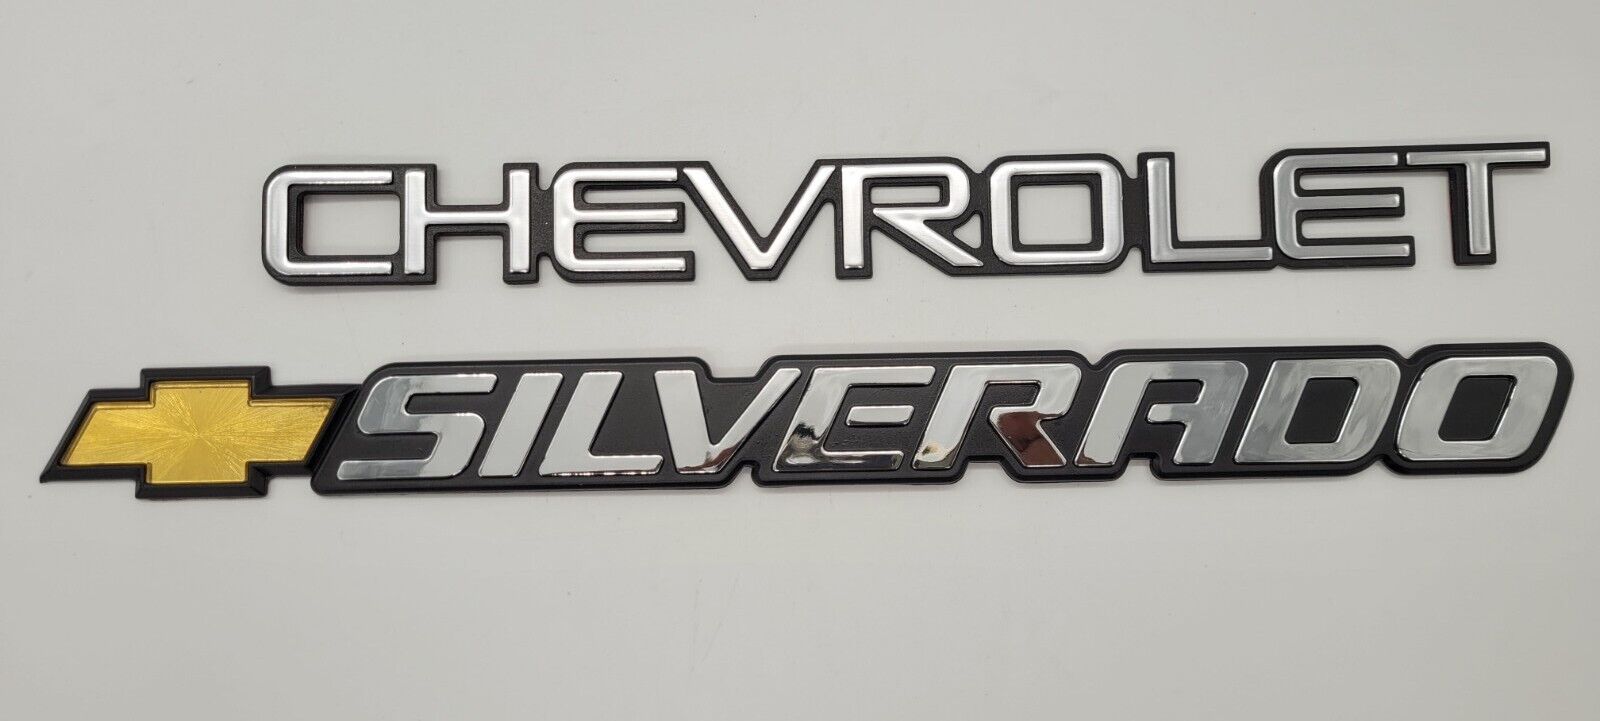 2005 Chevy  Silverado tailgate emblems